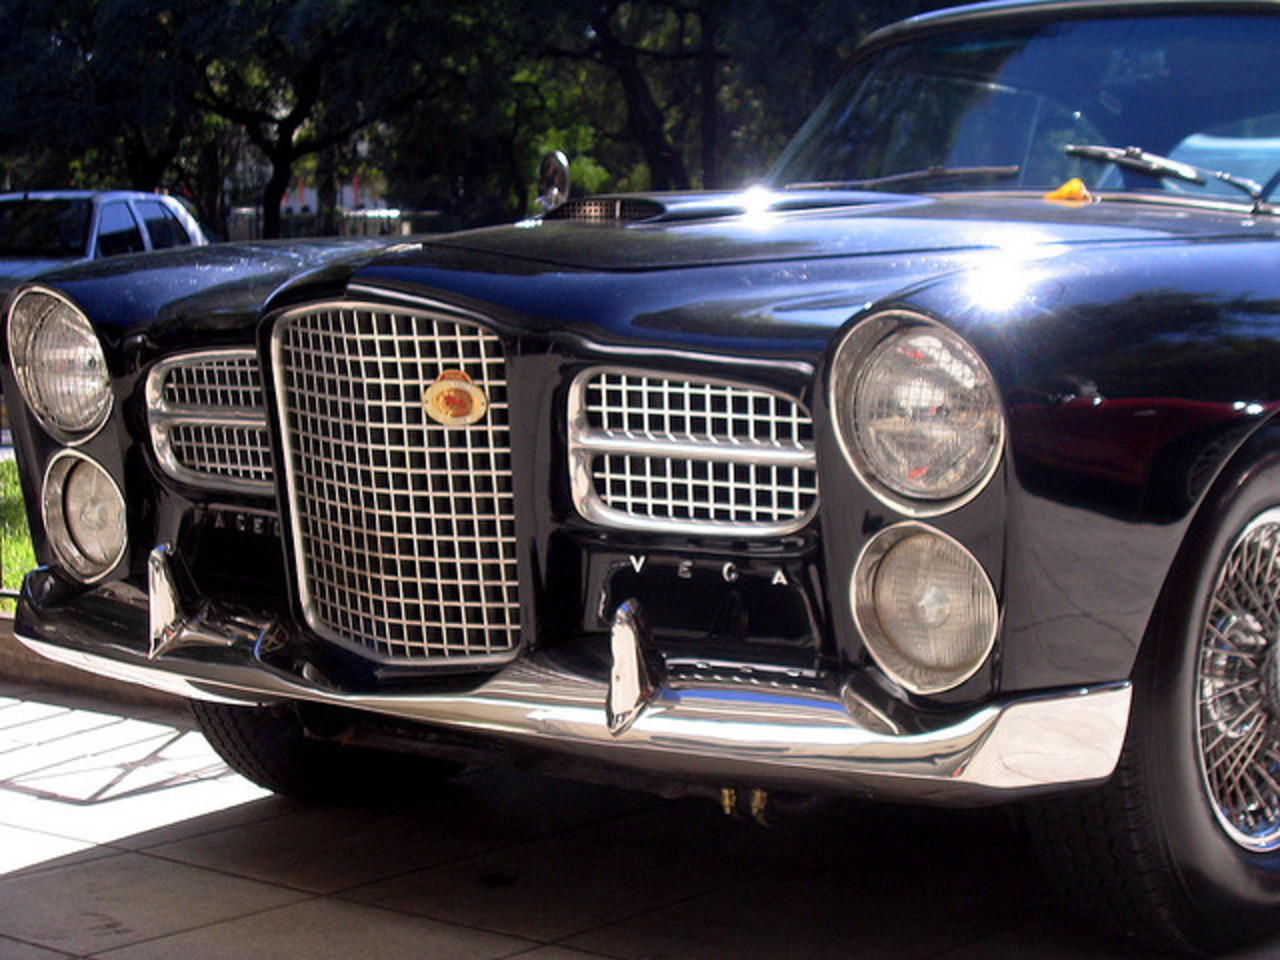 Classic Car - Facel V ega Typhoon | Flickr - Photo Sharing!